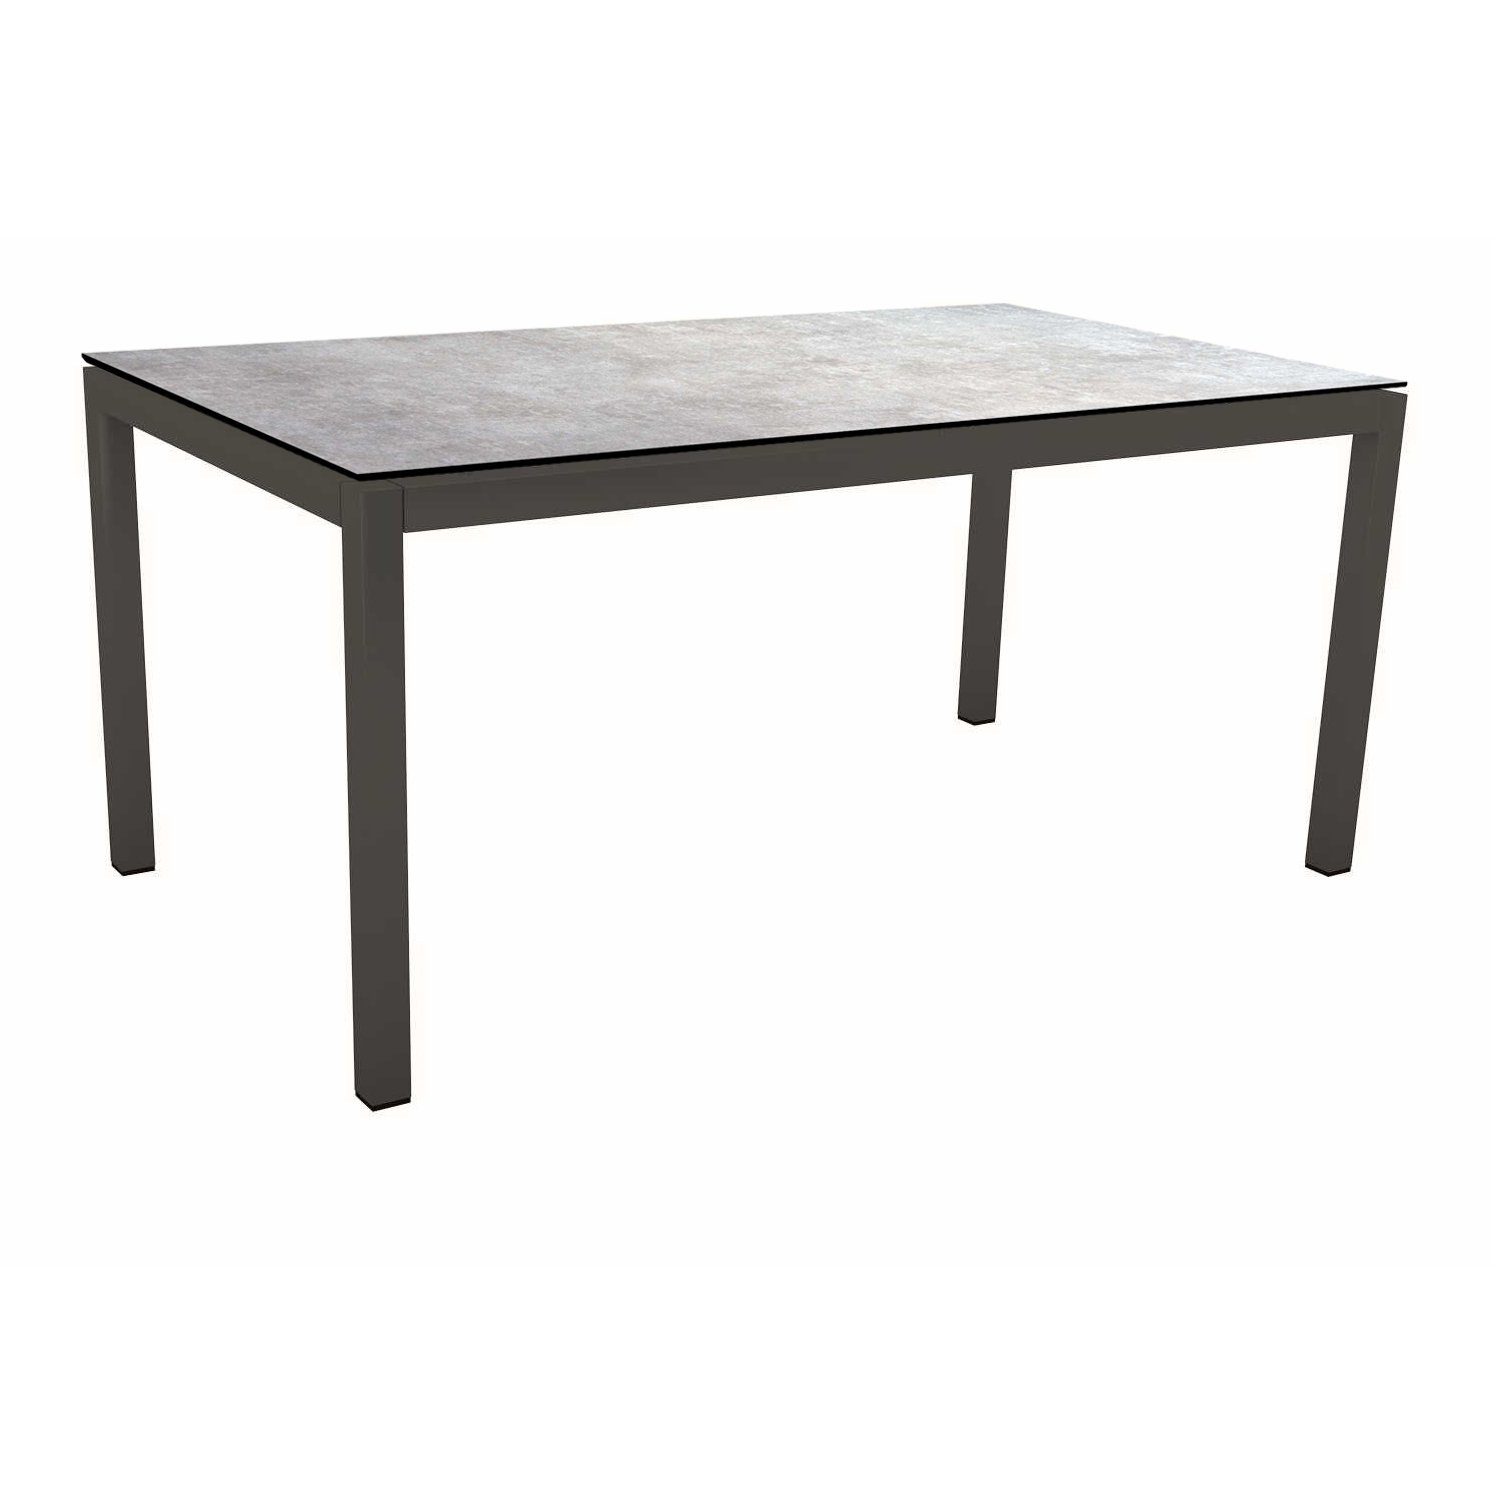 Stern Tischsystem Gartentisch, Gestell Aluminium anthrazit, Tischplatte HPL Metallic grau, Maße: 130x80 cm